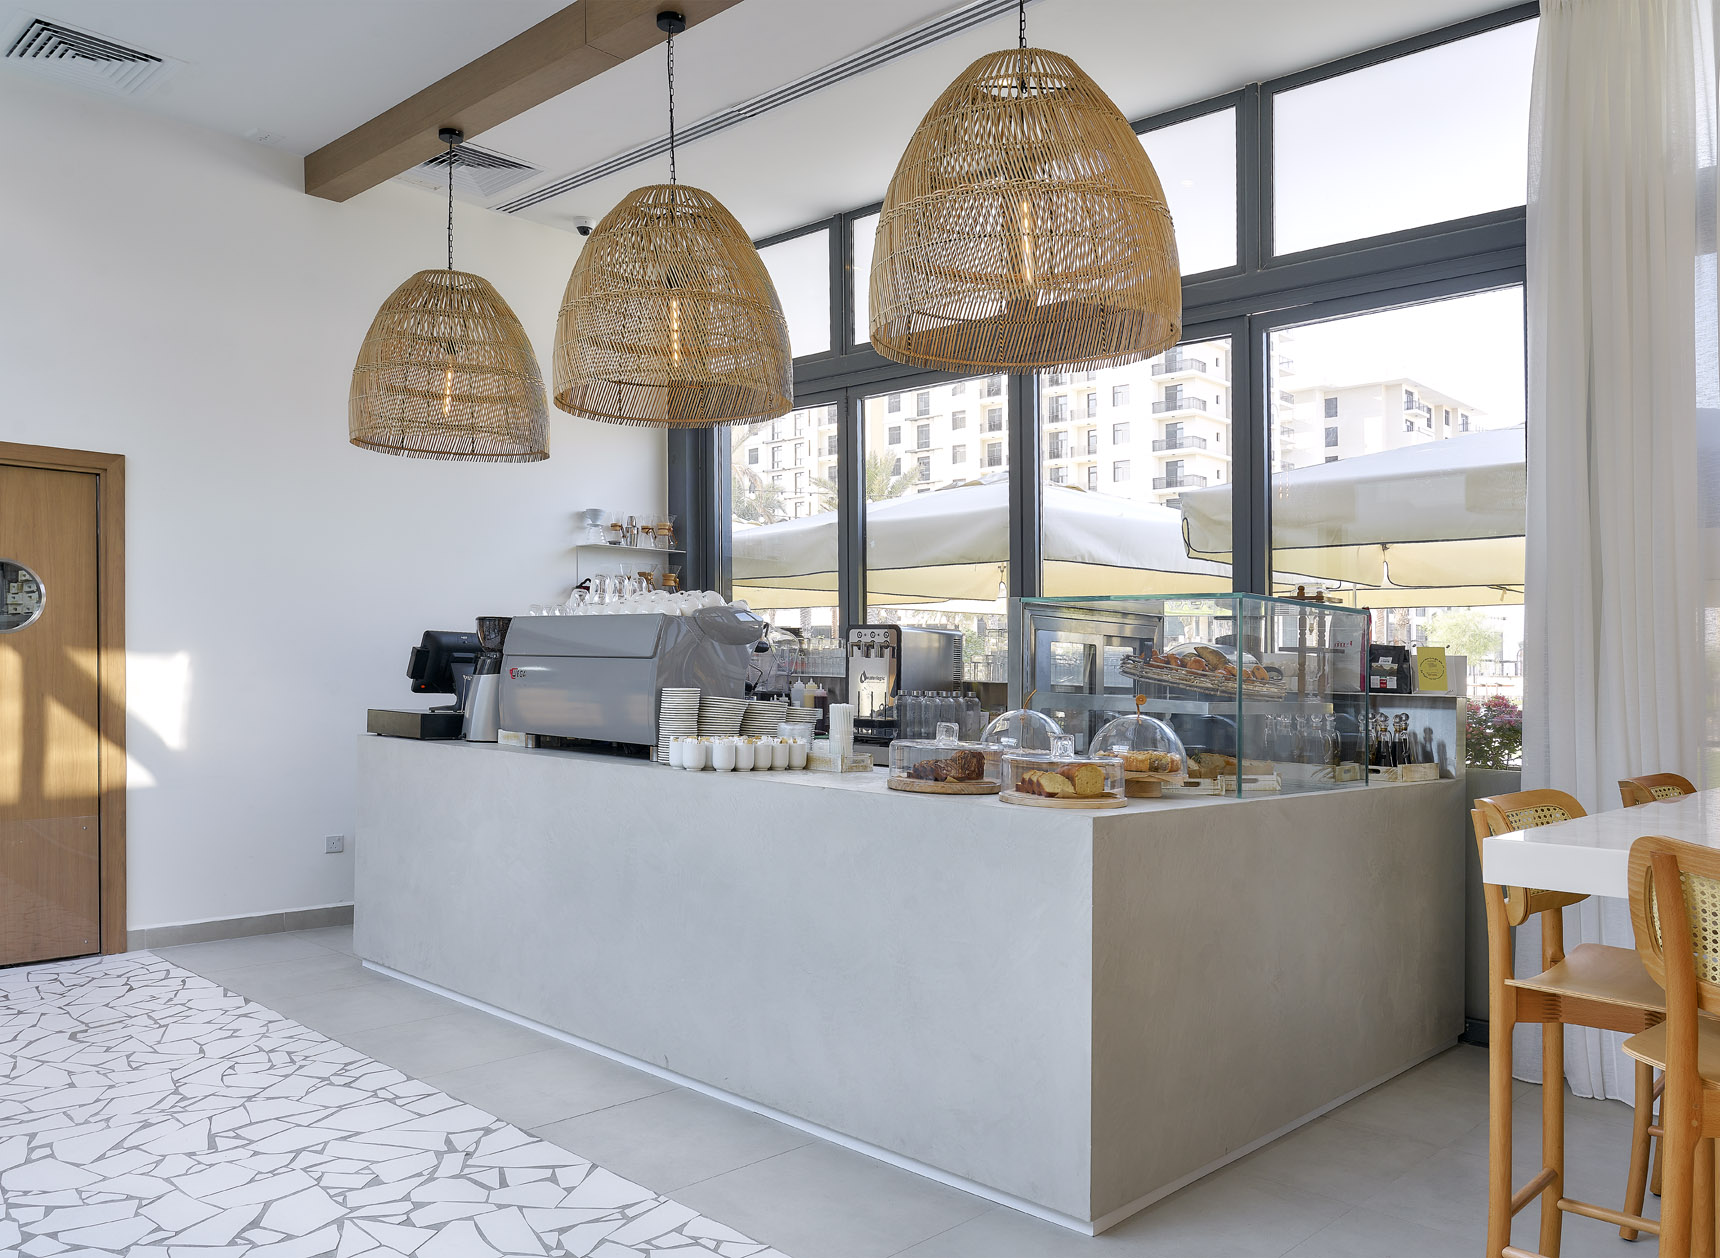 Specialty Coffee Shop Interior Design